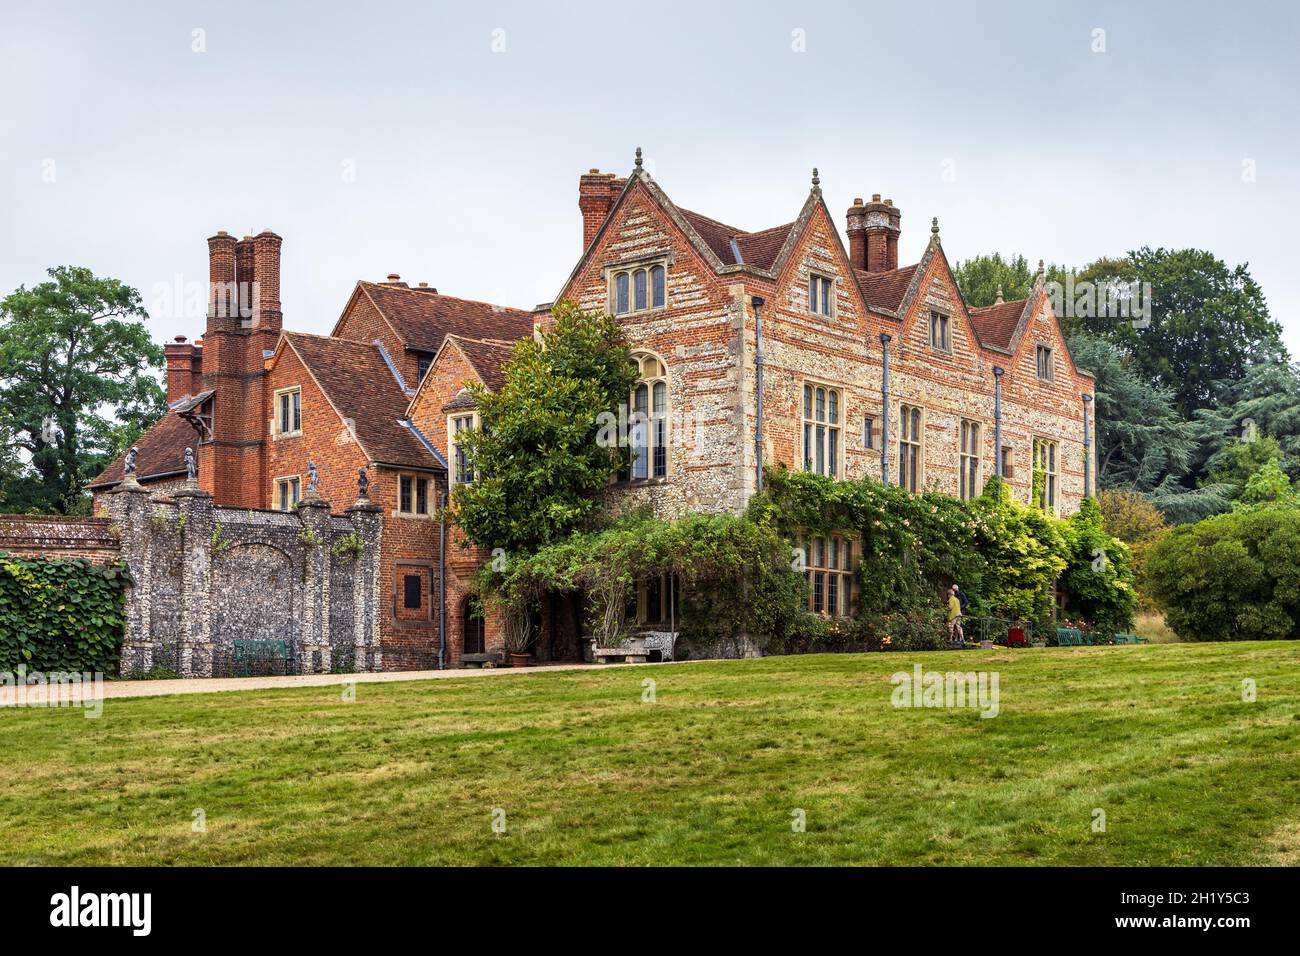 Grays court à Oxfordshire, une maison de campagne Tudor du XVIe siècle mentionnée dans le Domesday Book 1086 et autrefois la maison de la famille Brunner. Banque D'Images